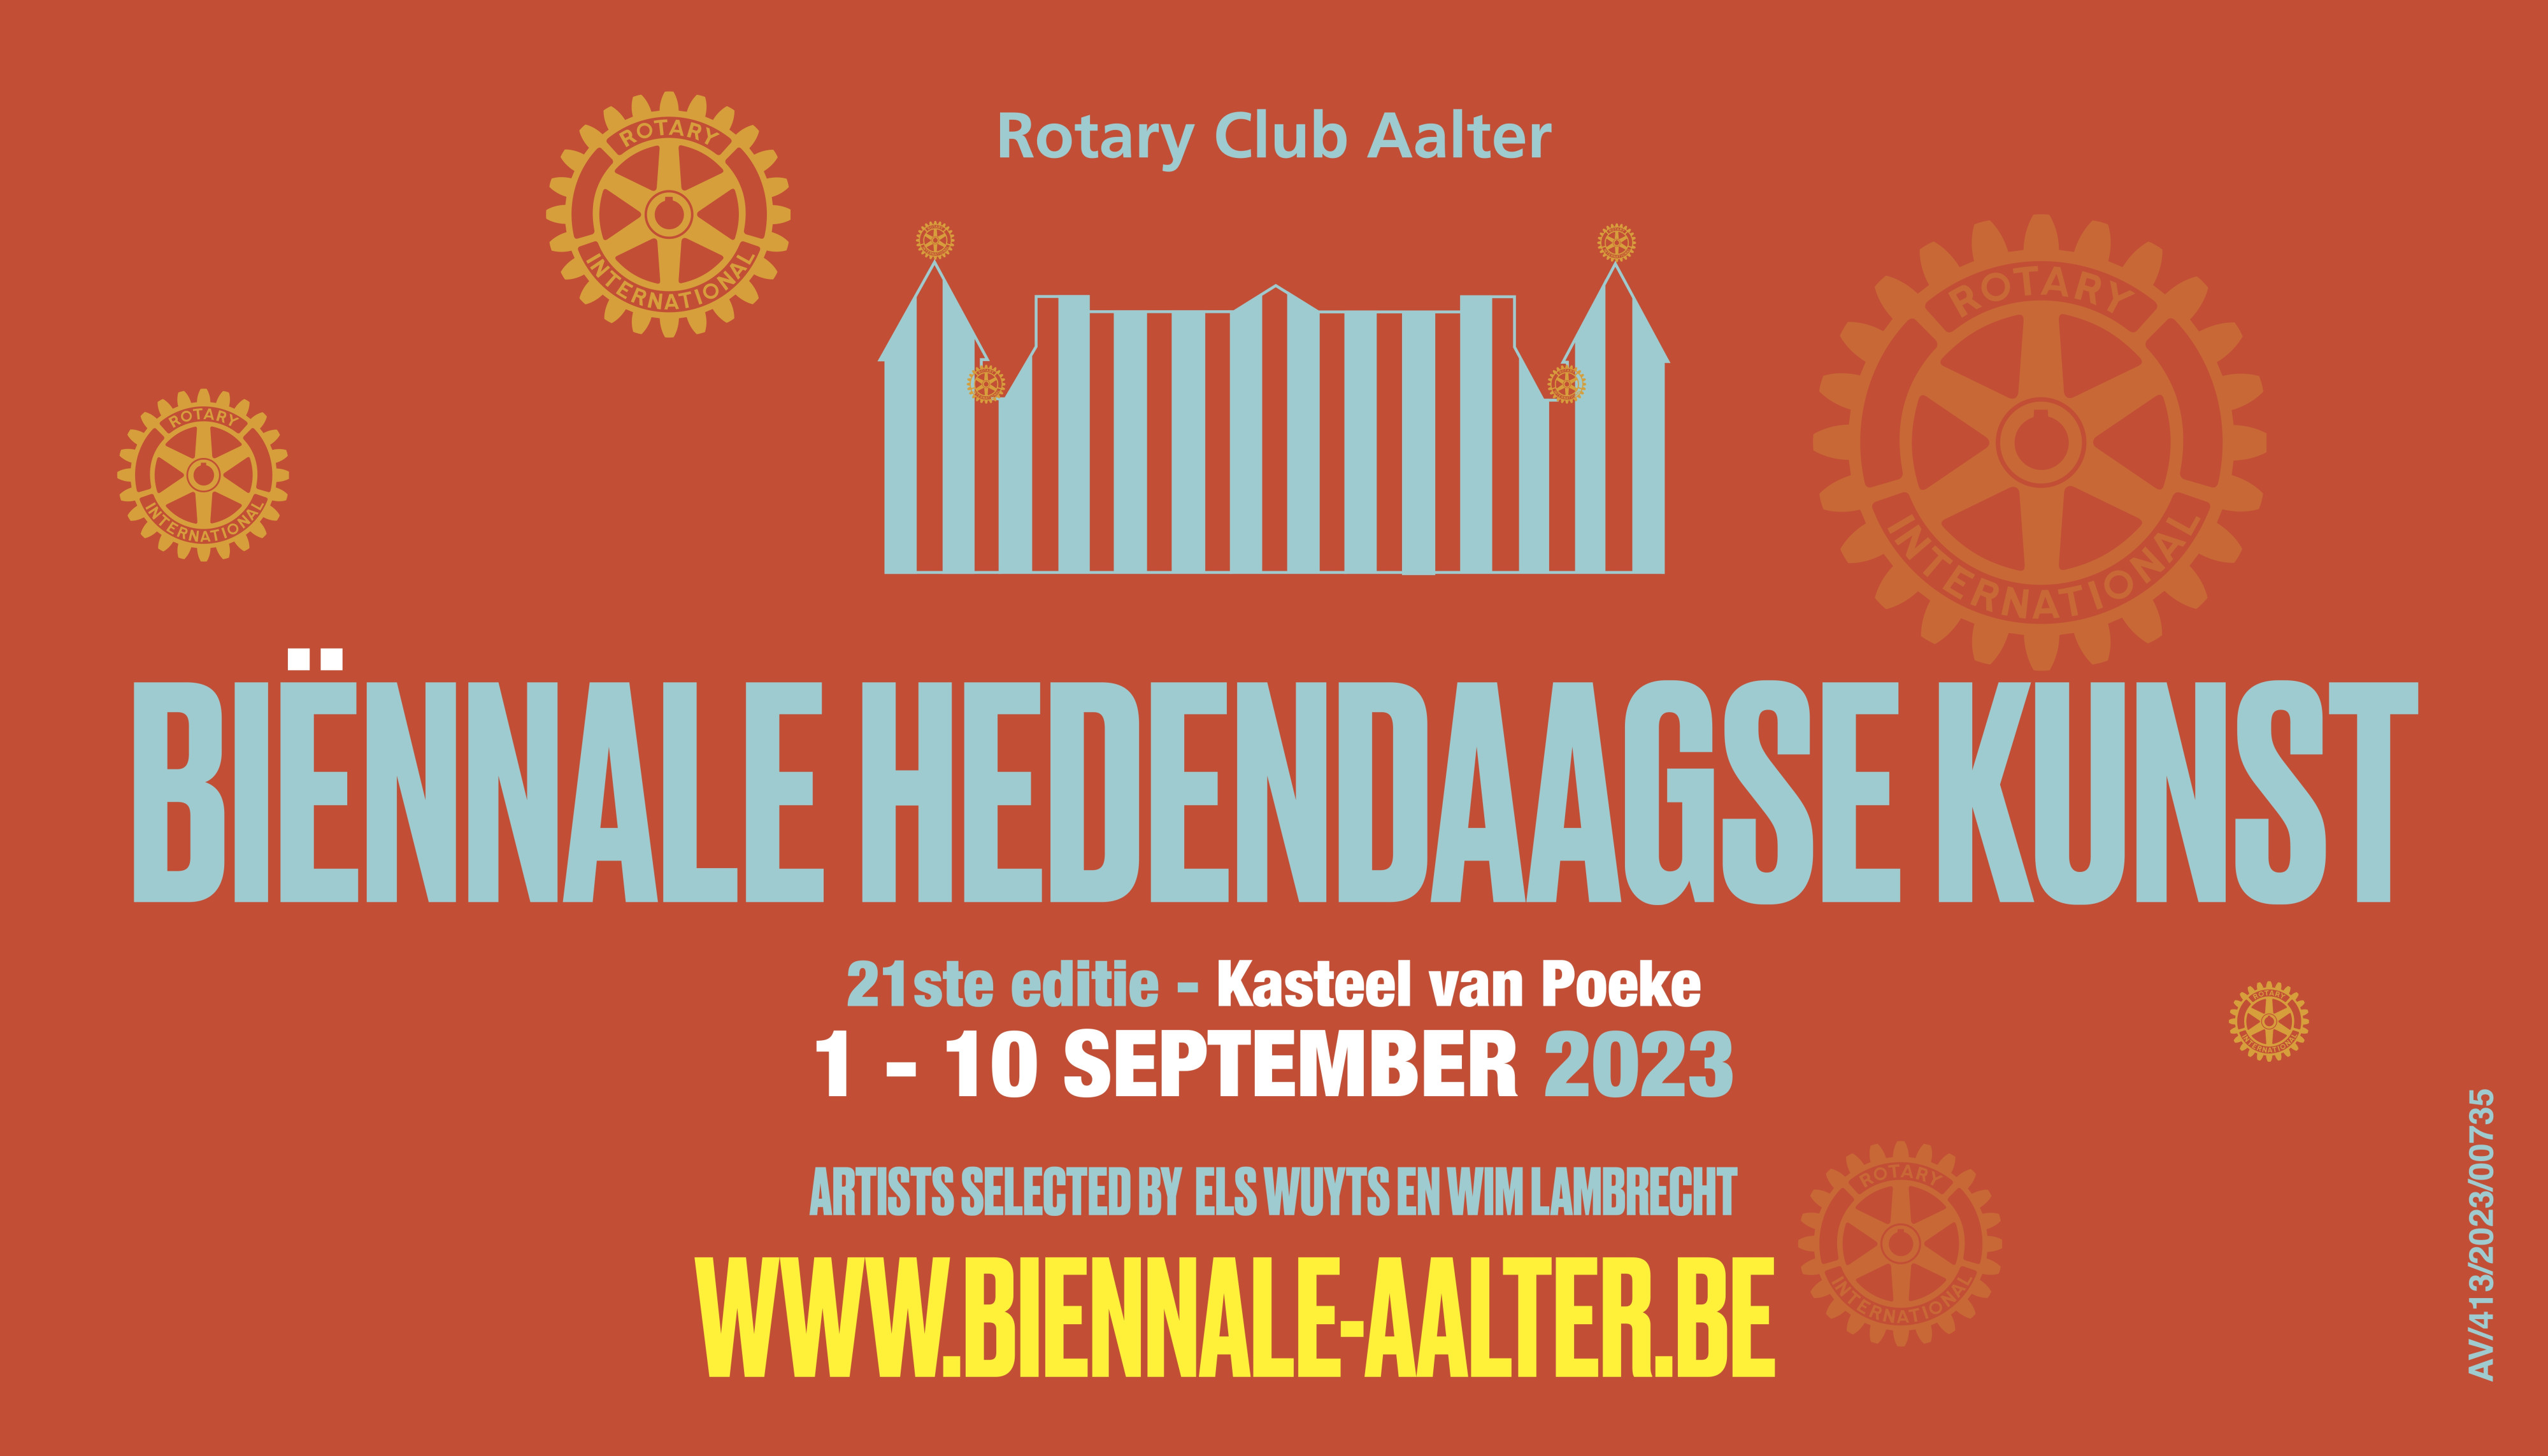 Rotary Club Aalter organiseert 21ste editie Biënnale Hedendaagse Kunst in het Kasteel van Poeke